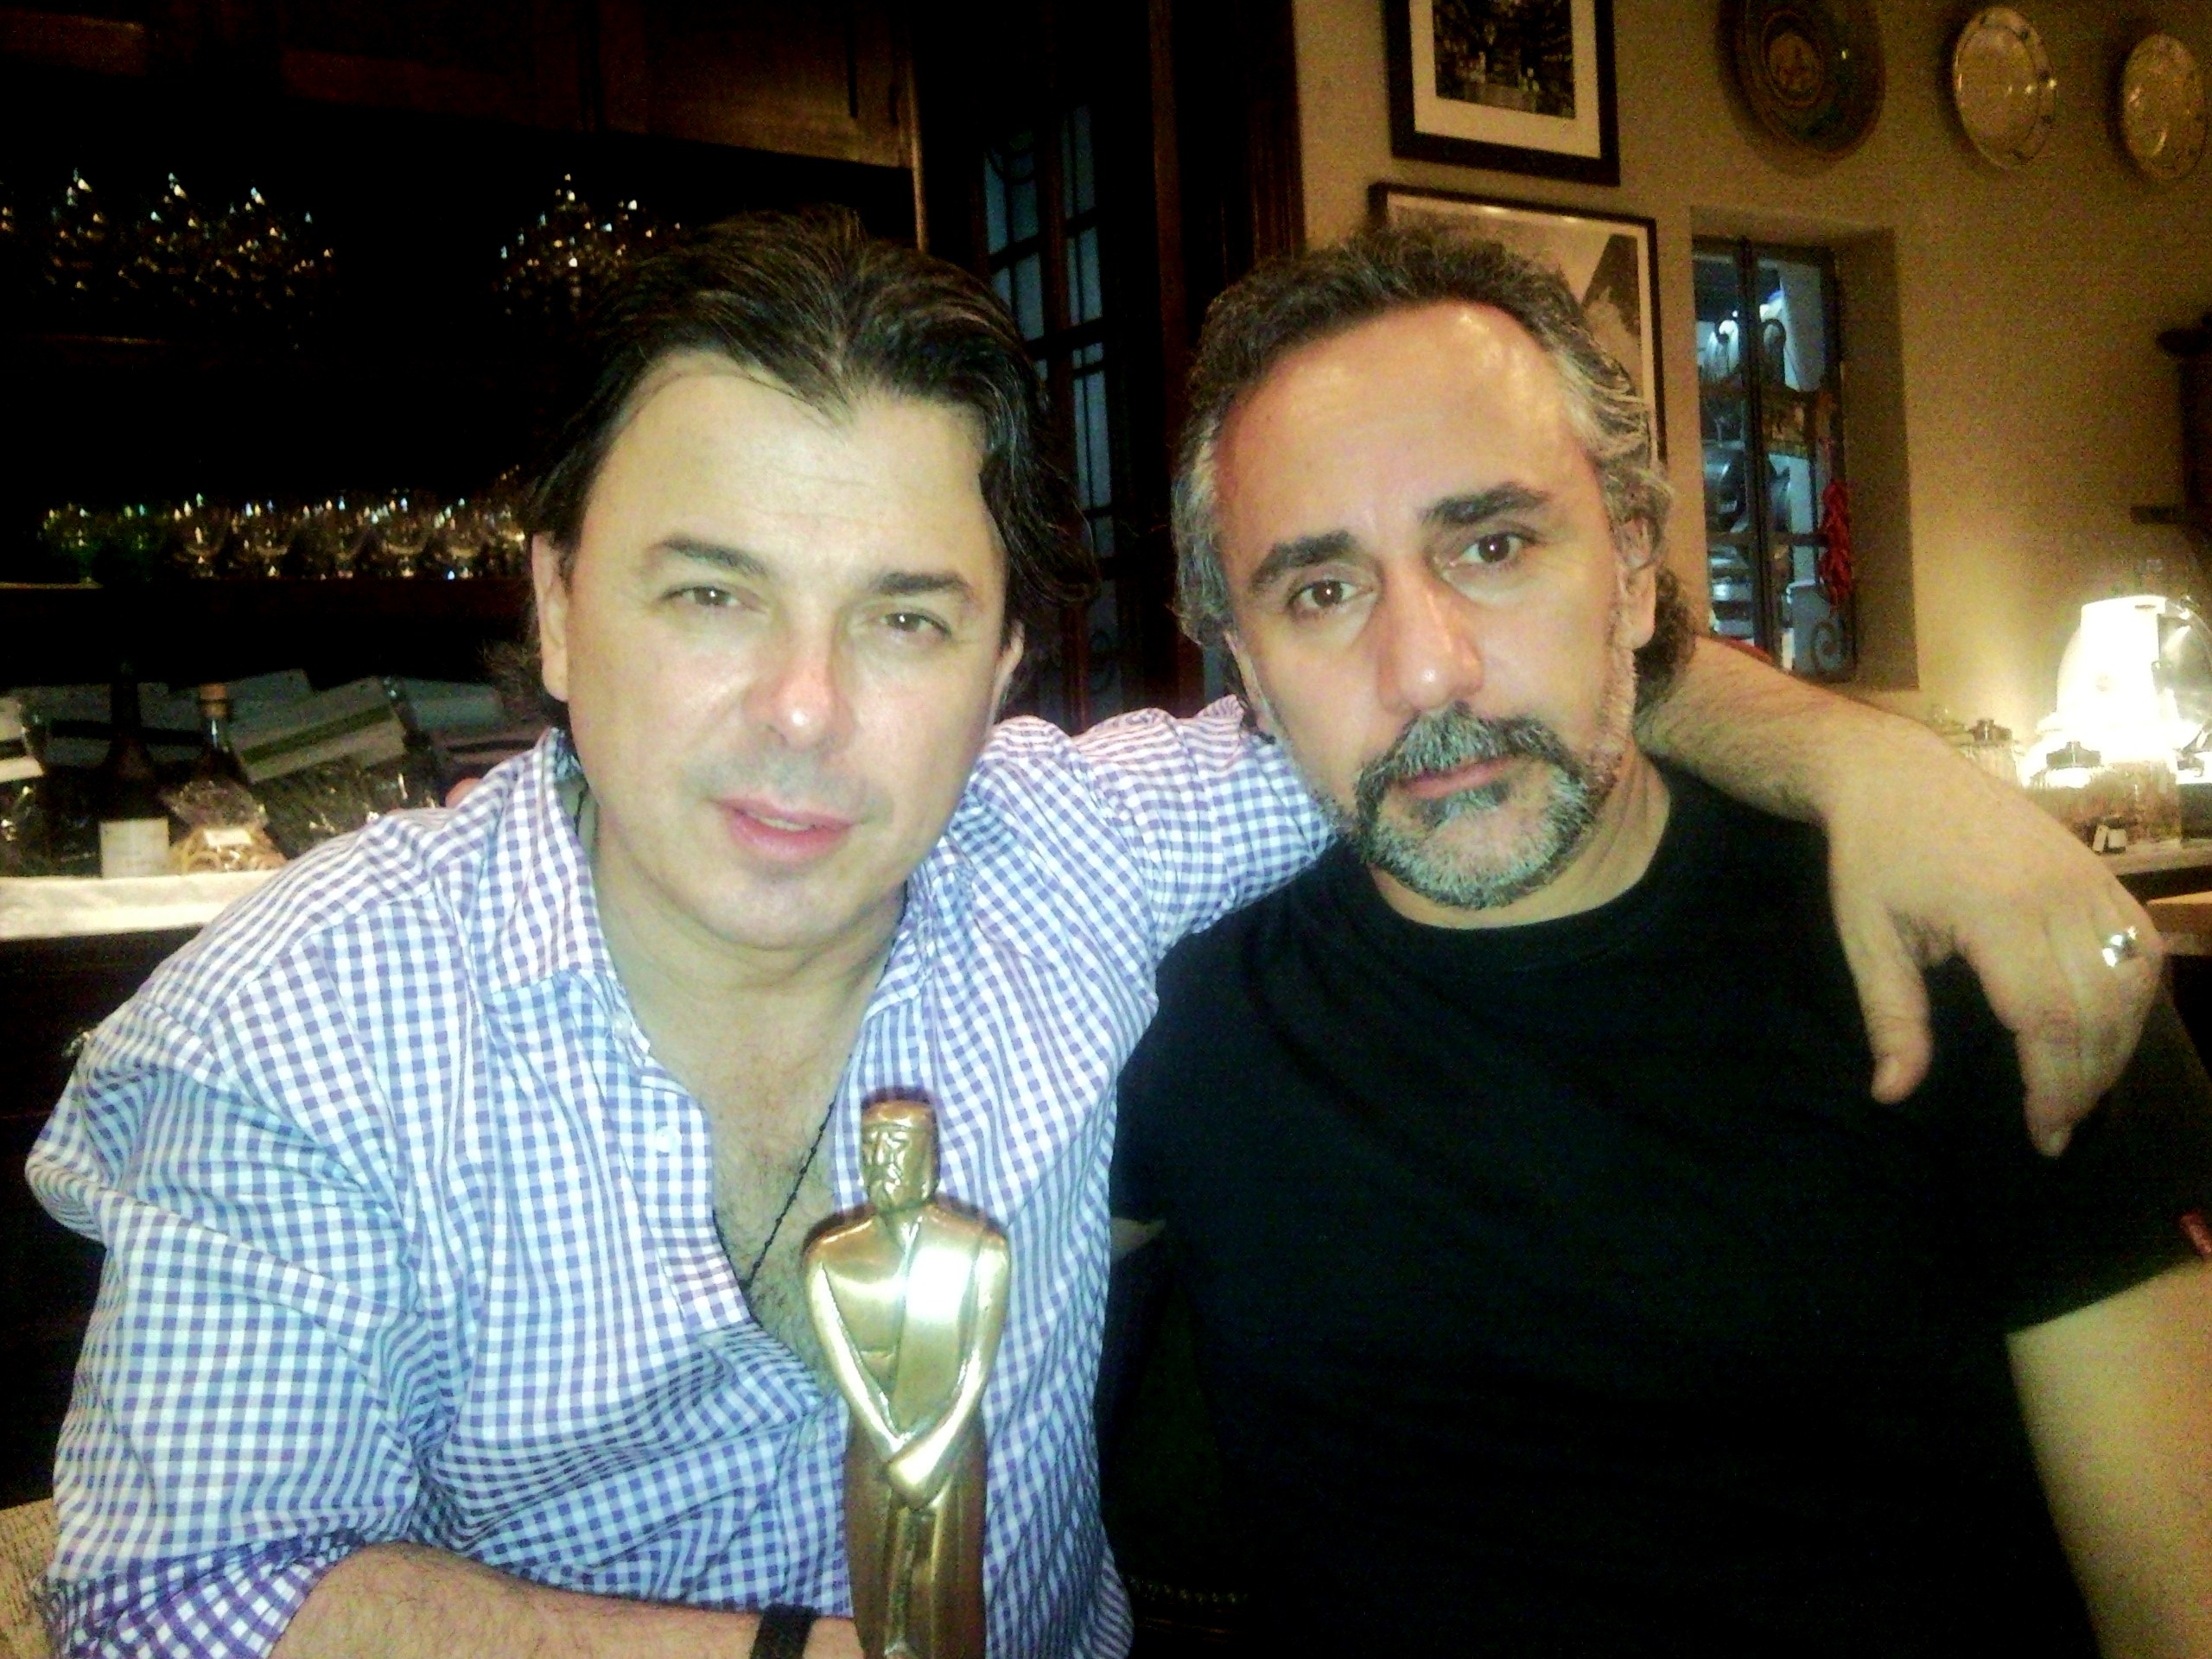 With Chef Donato De Santis, celebrating Martin Fierro Award for 